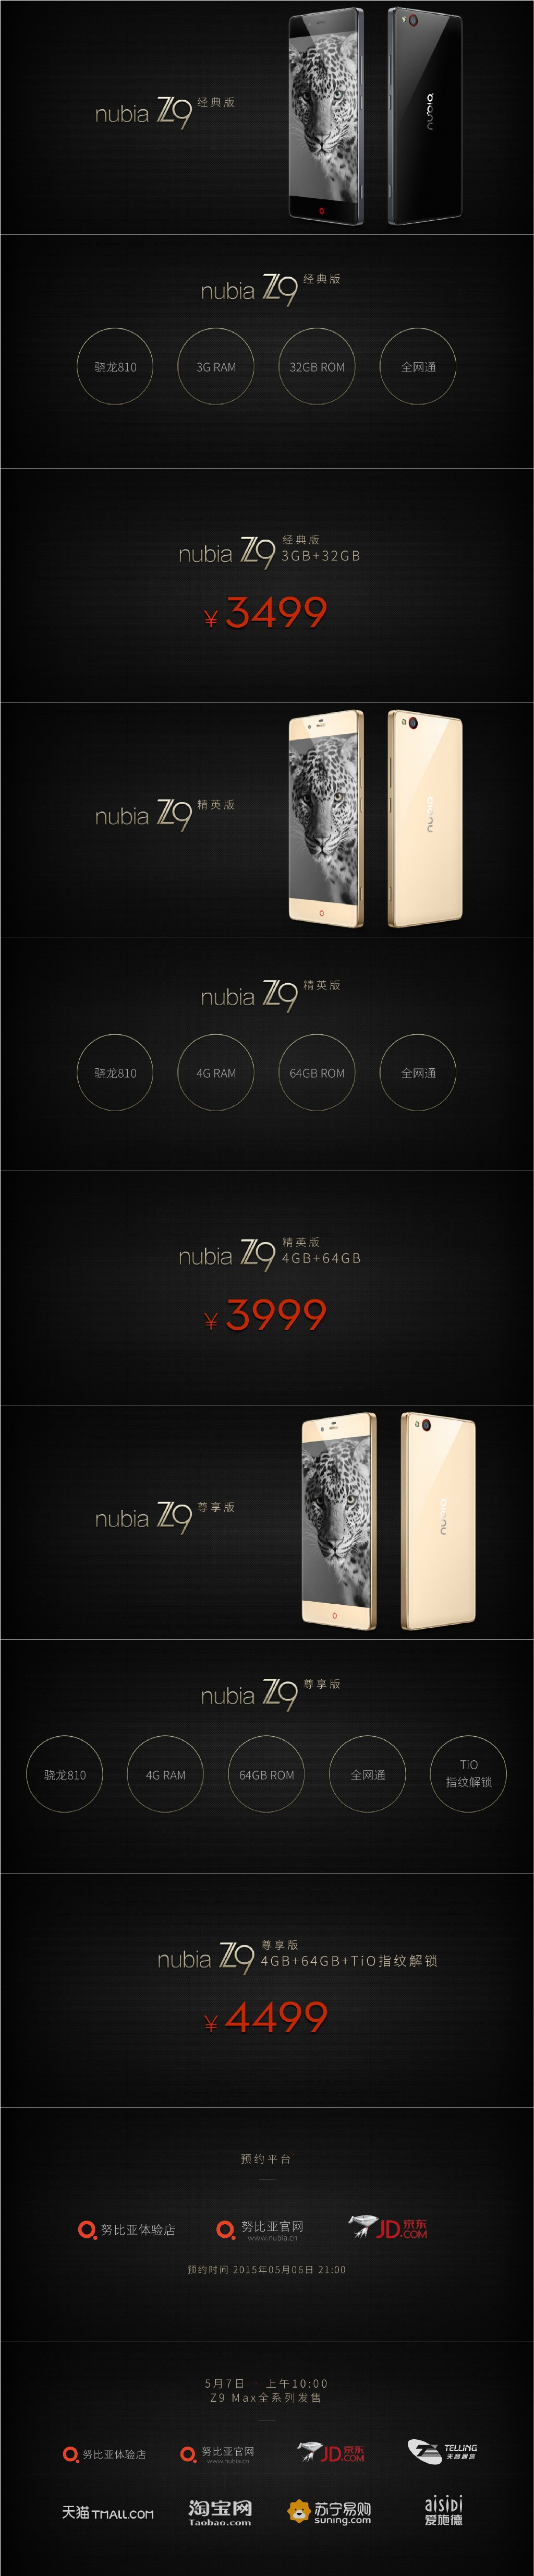 努比亚z9经典版精英版尊享版有什么区别 3款nubiaz9评测1